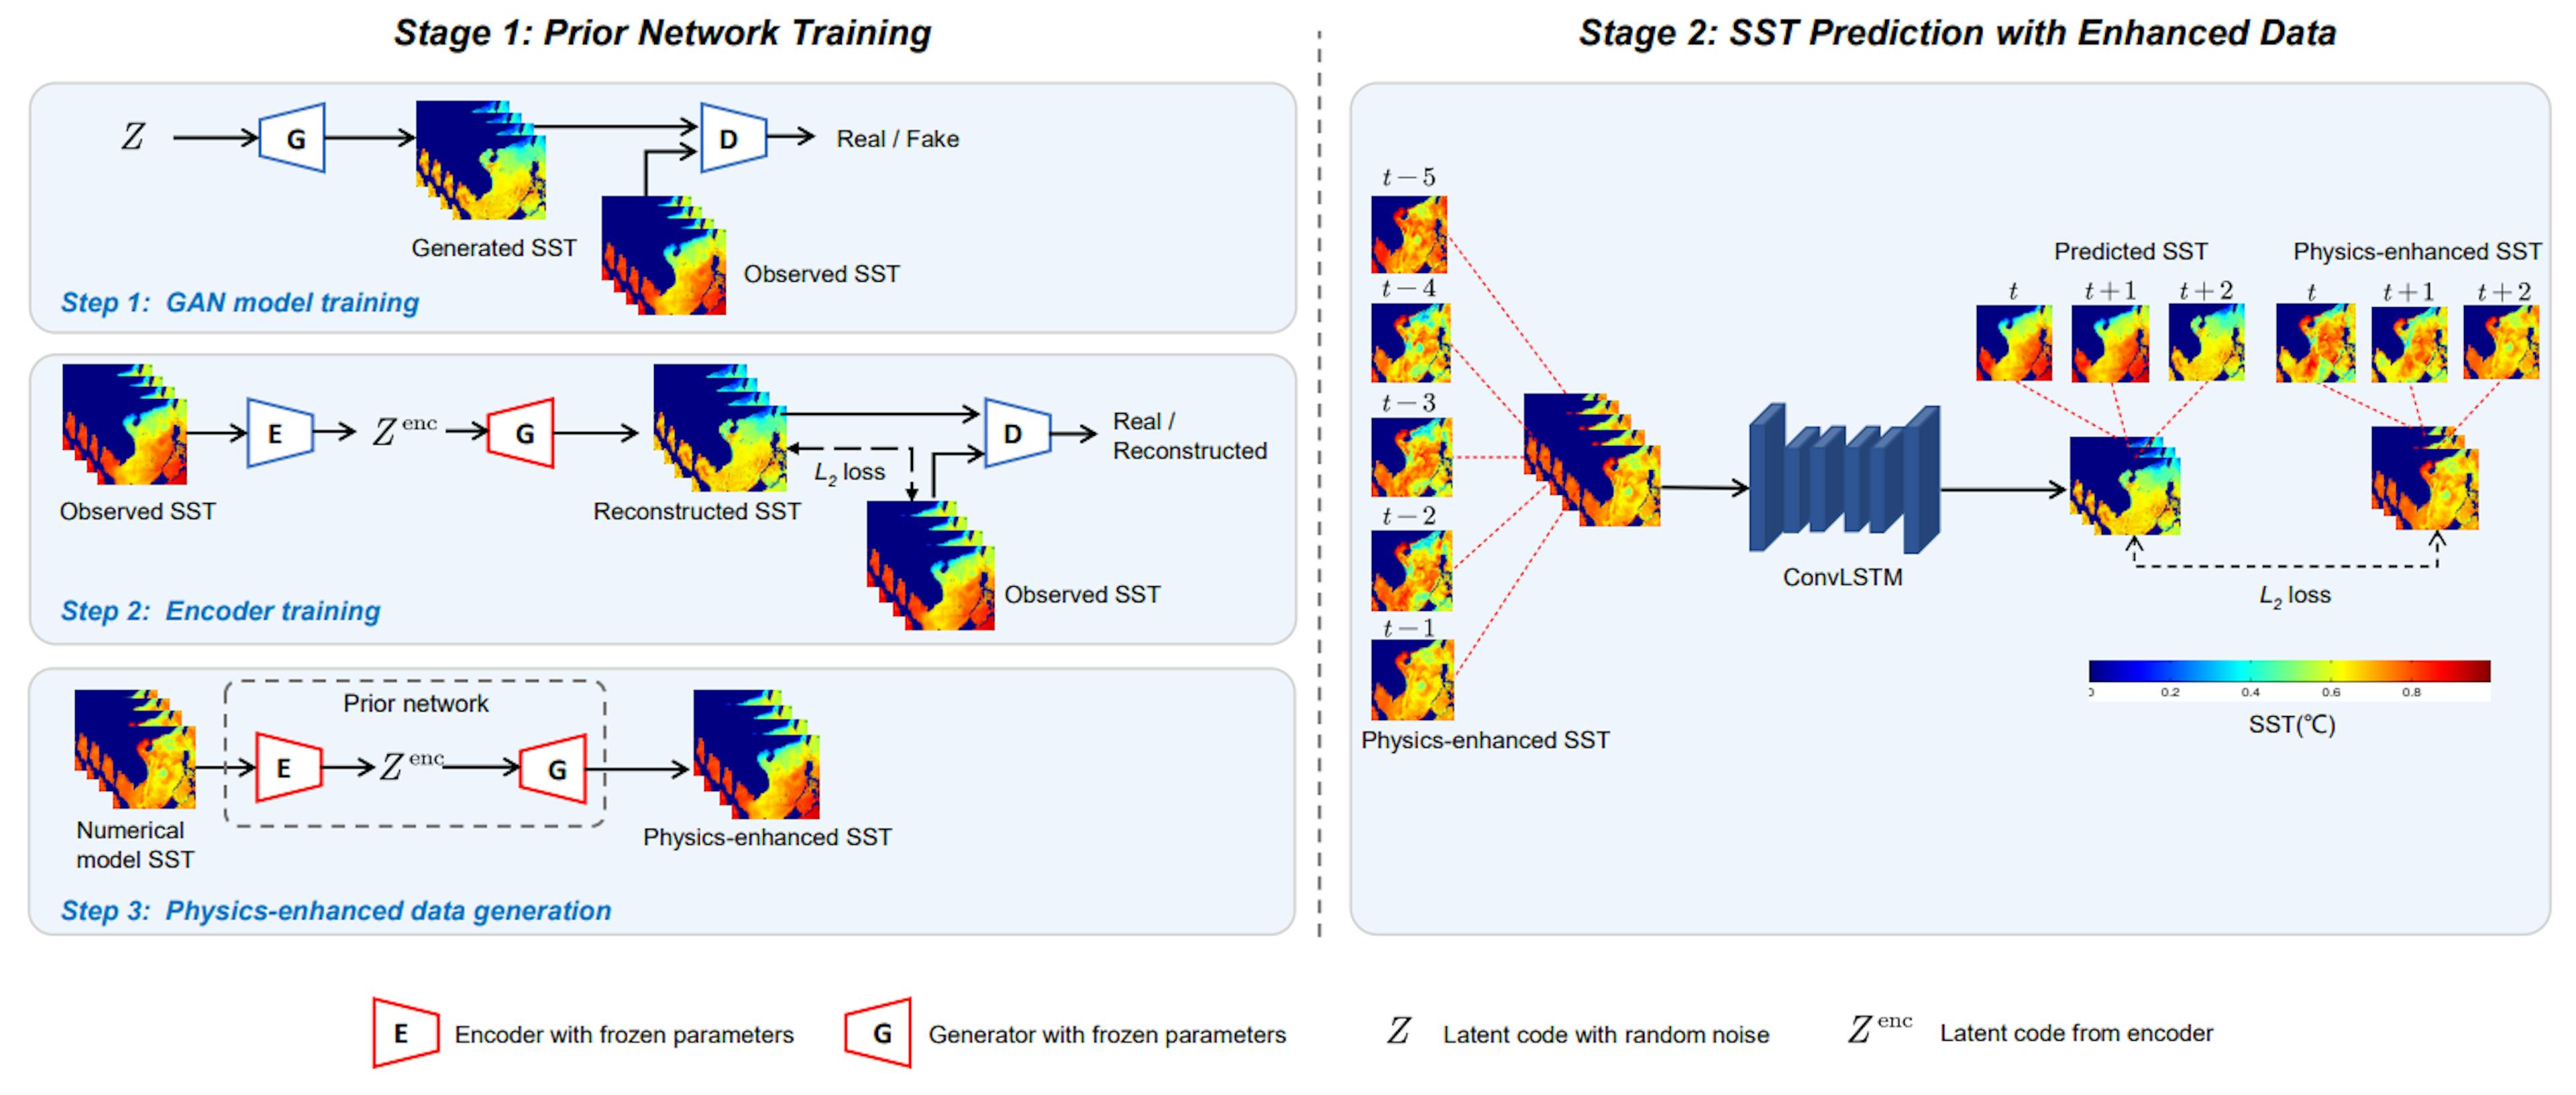 Fig. 2. Illustration de la méthode de prédiction SST proposée. Il se compose de deux étapes : formation préalable du réseau et prédiction SST avec des données améliorées. Dans un premier temps, un réseau préalable est formé pour générer un SST amélioré par la physique. Dans la deuxième étape, les SST améliorés par la physique sont utilisés pour la prédiction SST via ConvLSTM.